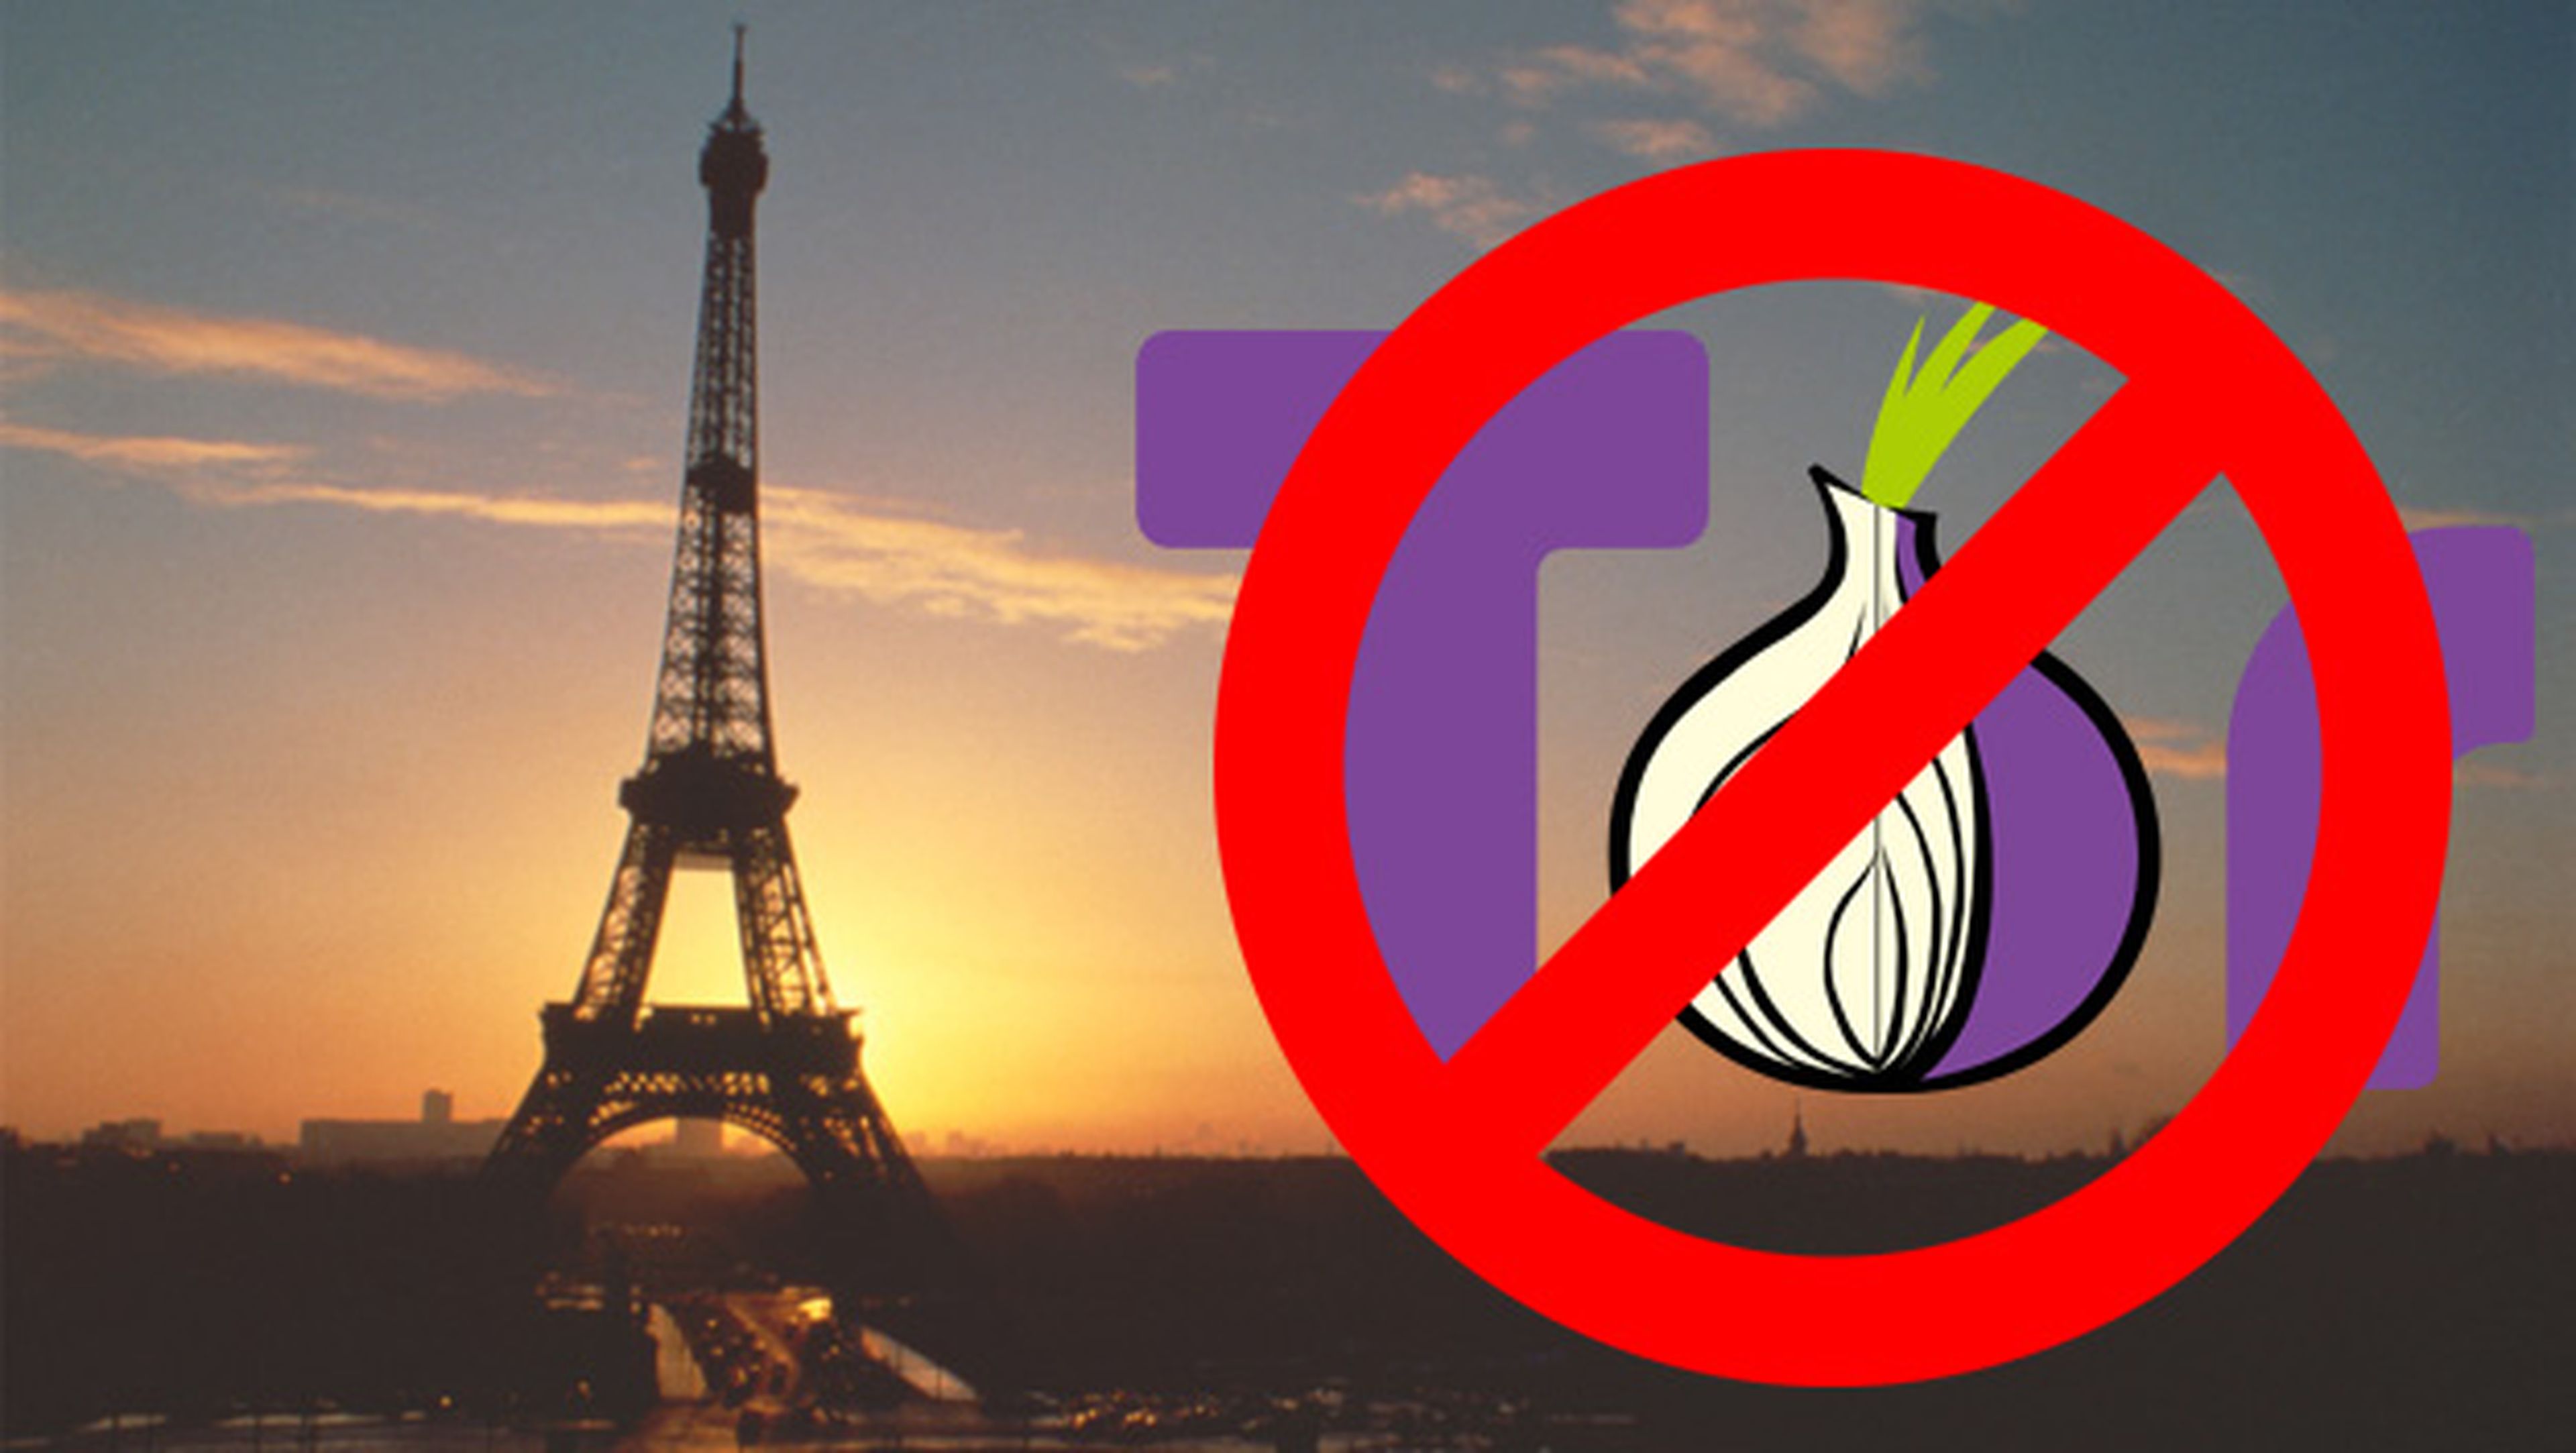 Francia quiere prohibir Tor redes WiFi gratuitas